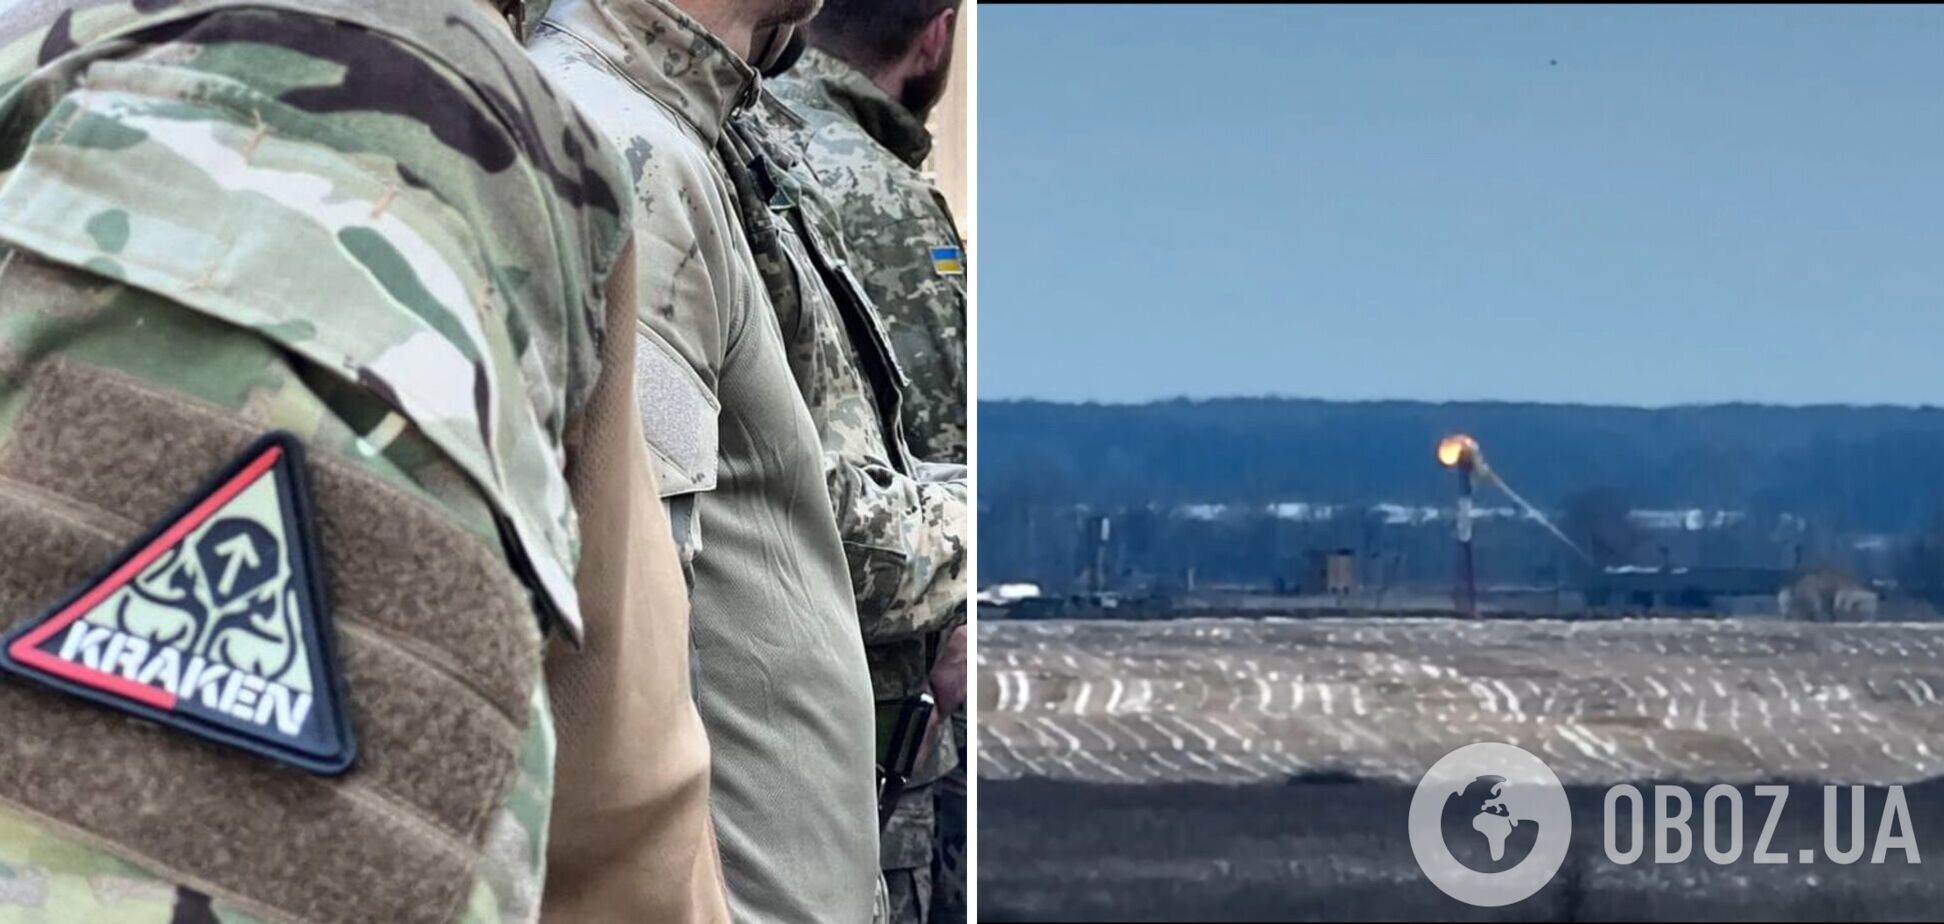 Дрон-камікадзе спецпідрозділу 'KRAKEN' знищив автономну вежу спостереження 'Гренадер' у Брянській області. Відео 